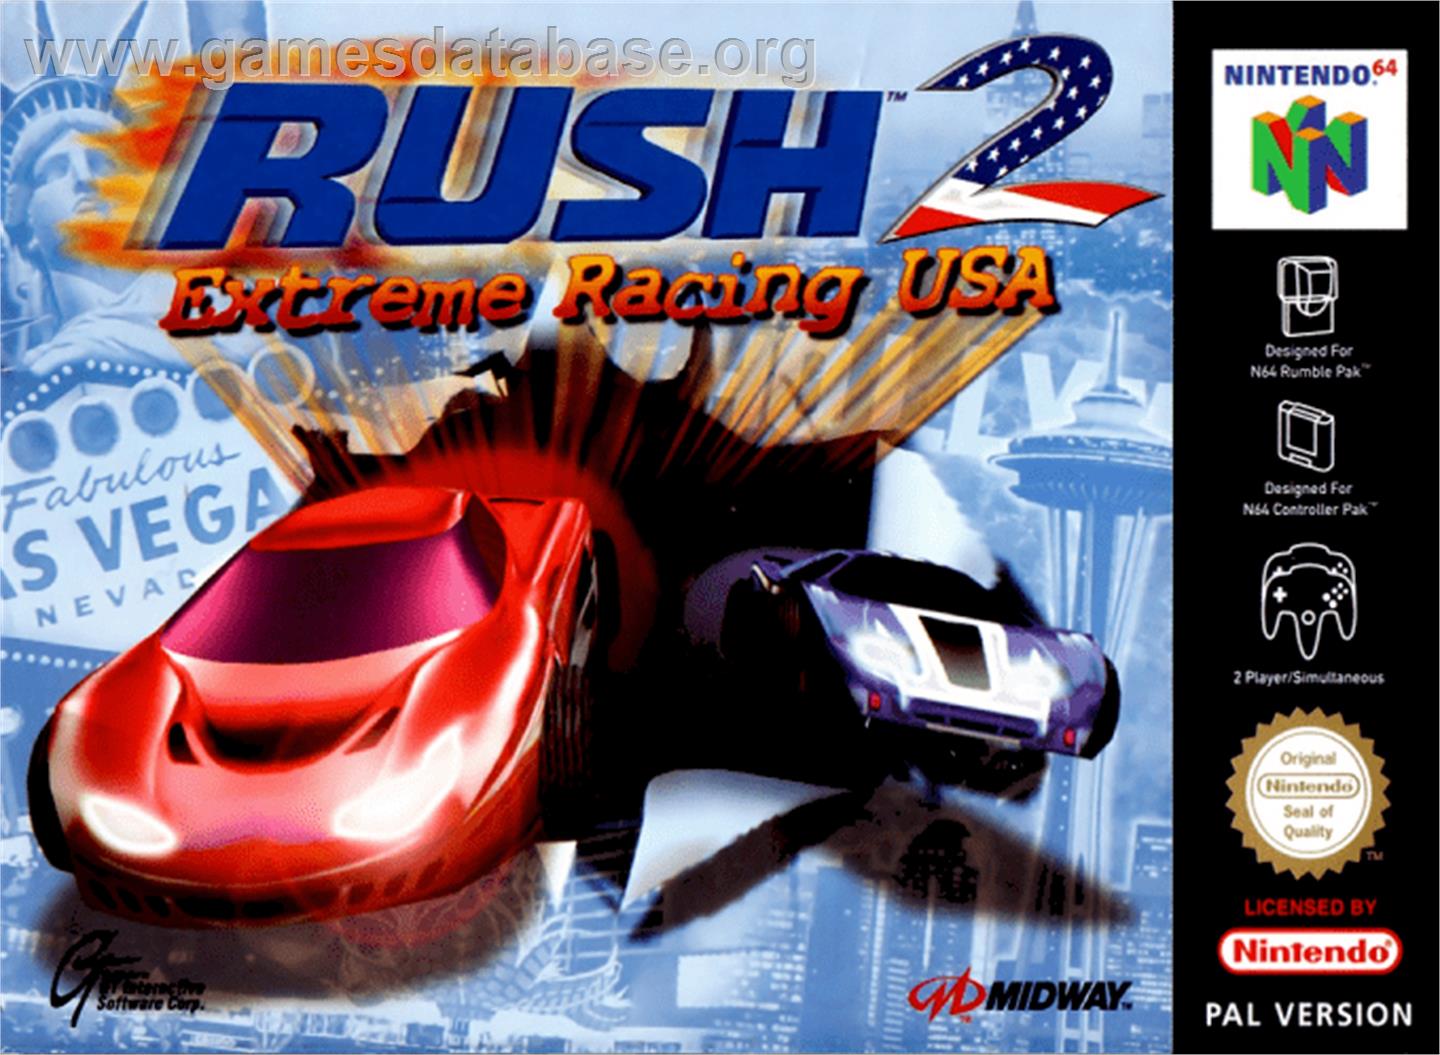 Rush 2: Extreme Racing USA - Nintendo N64 - Artwork - Box